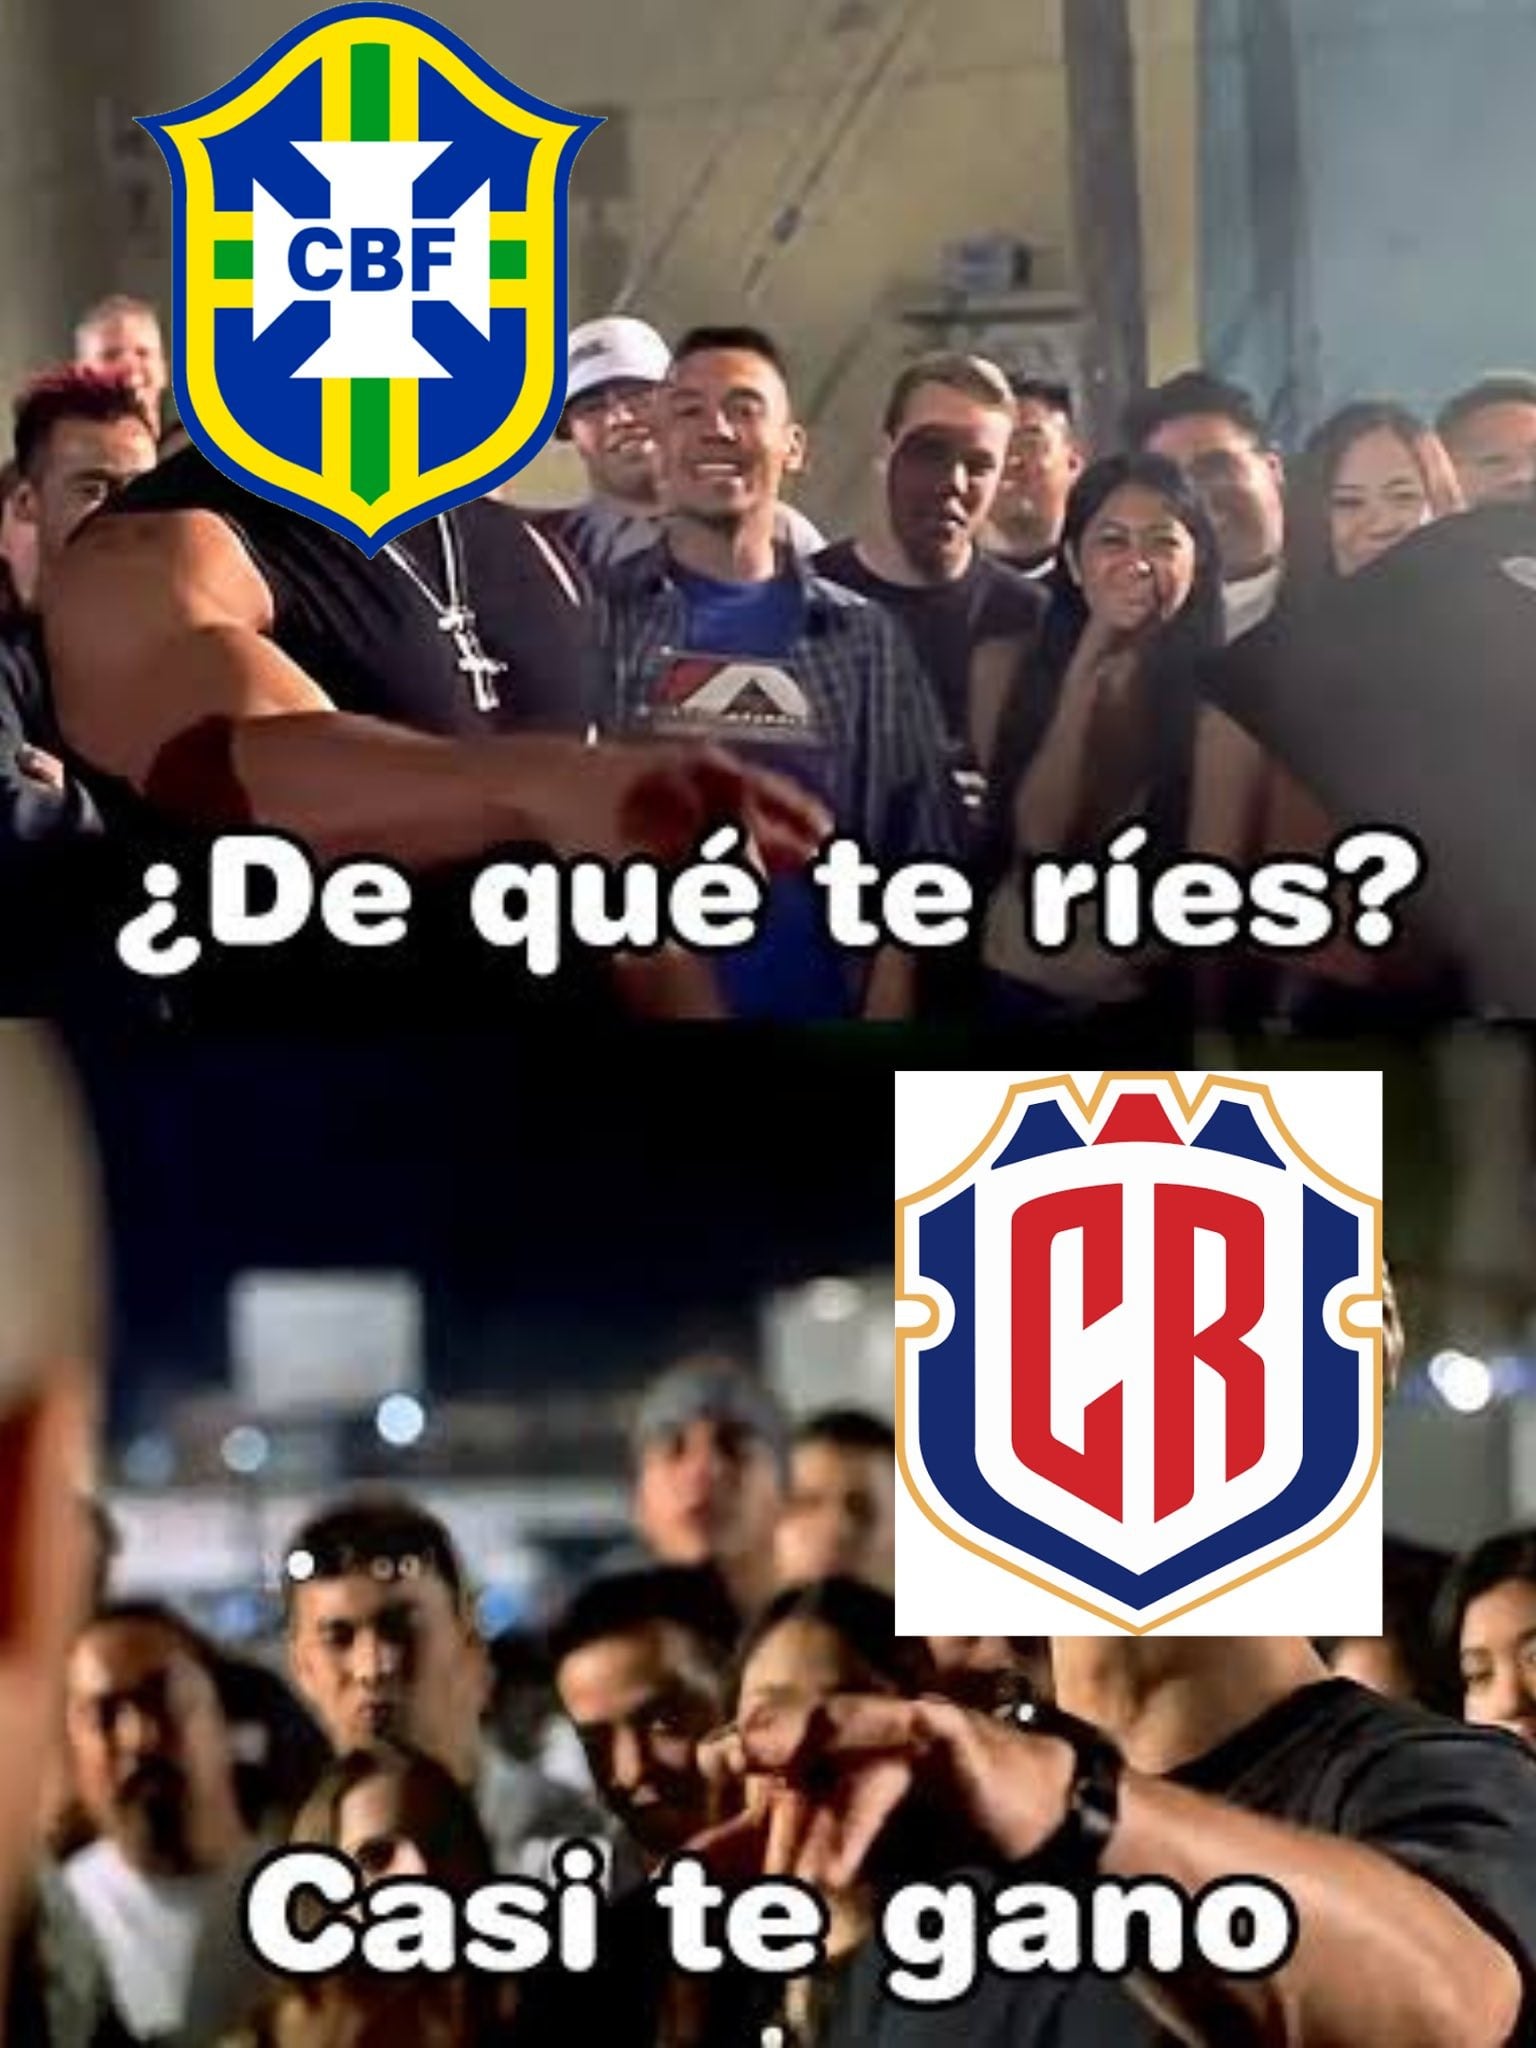 Brasil no pudo con Costa Rica y las redes sociales explotaron con divertidos memes que retratan la sorpresa del resultado.